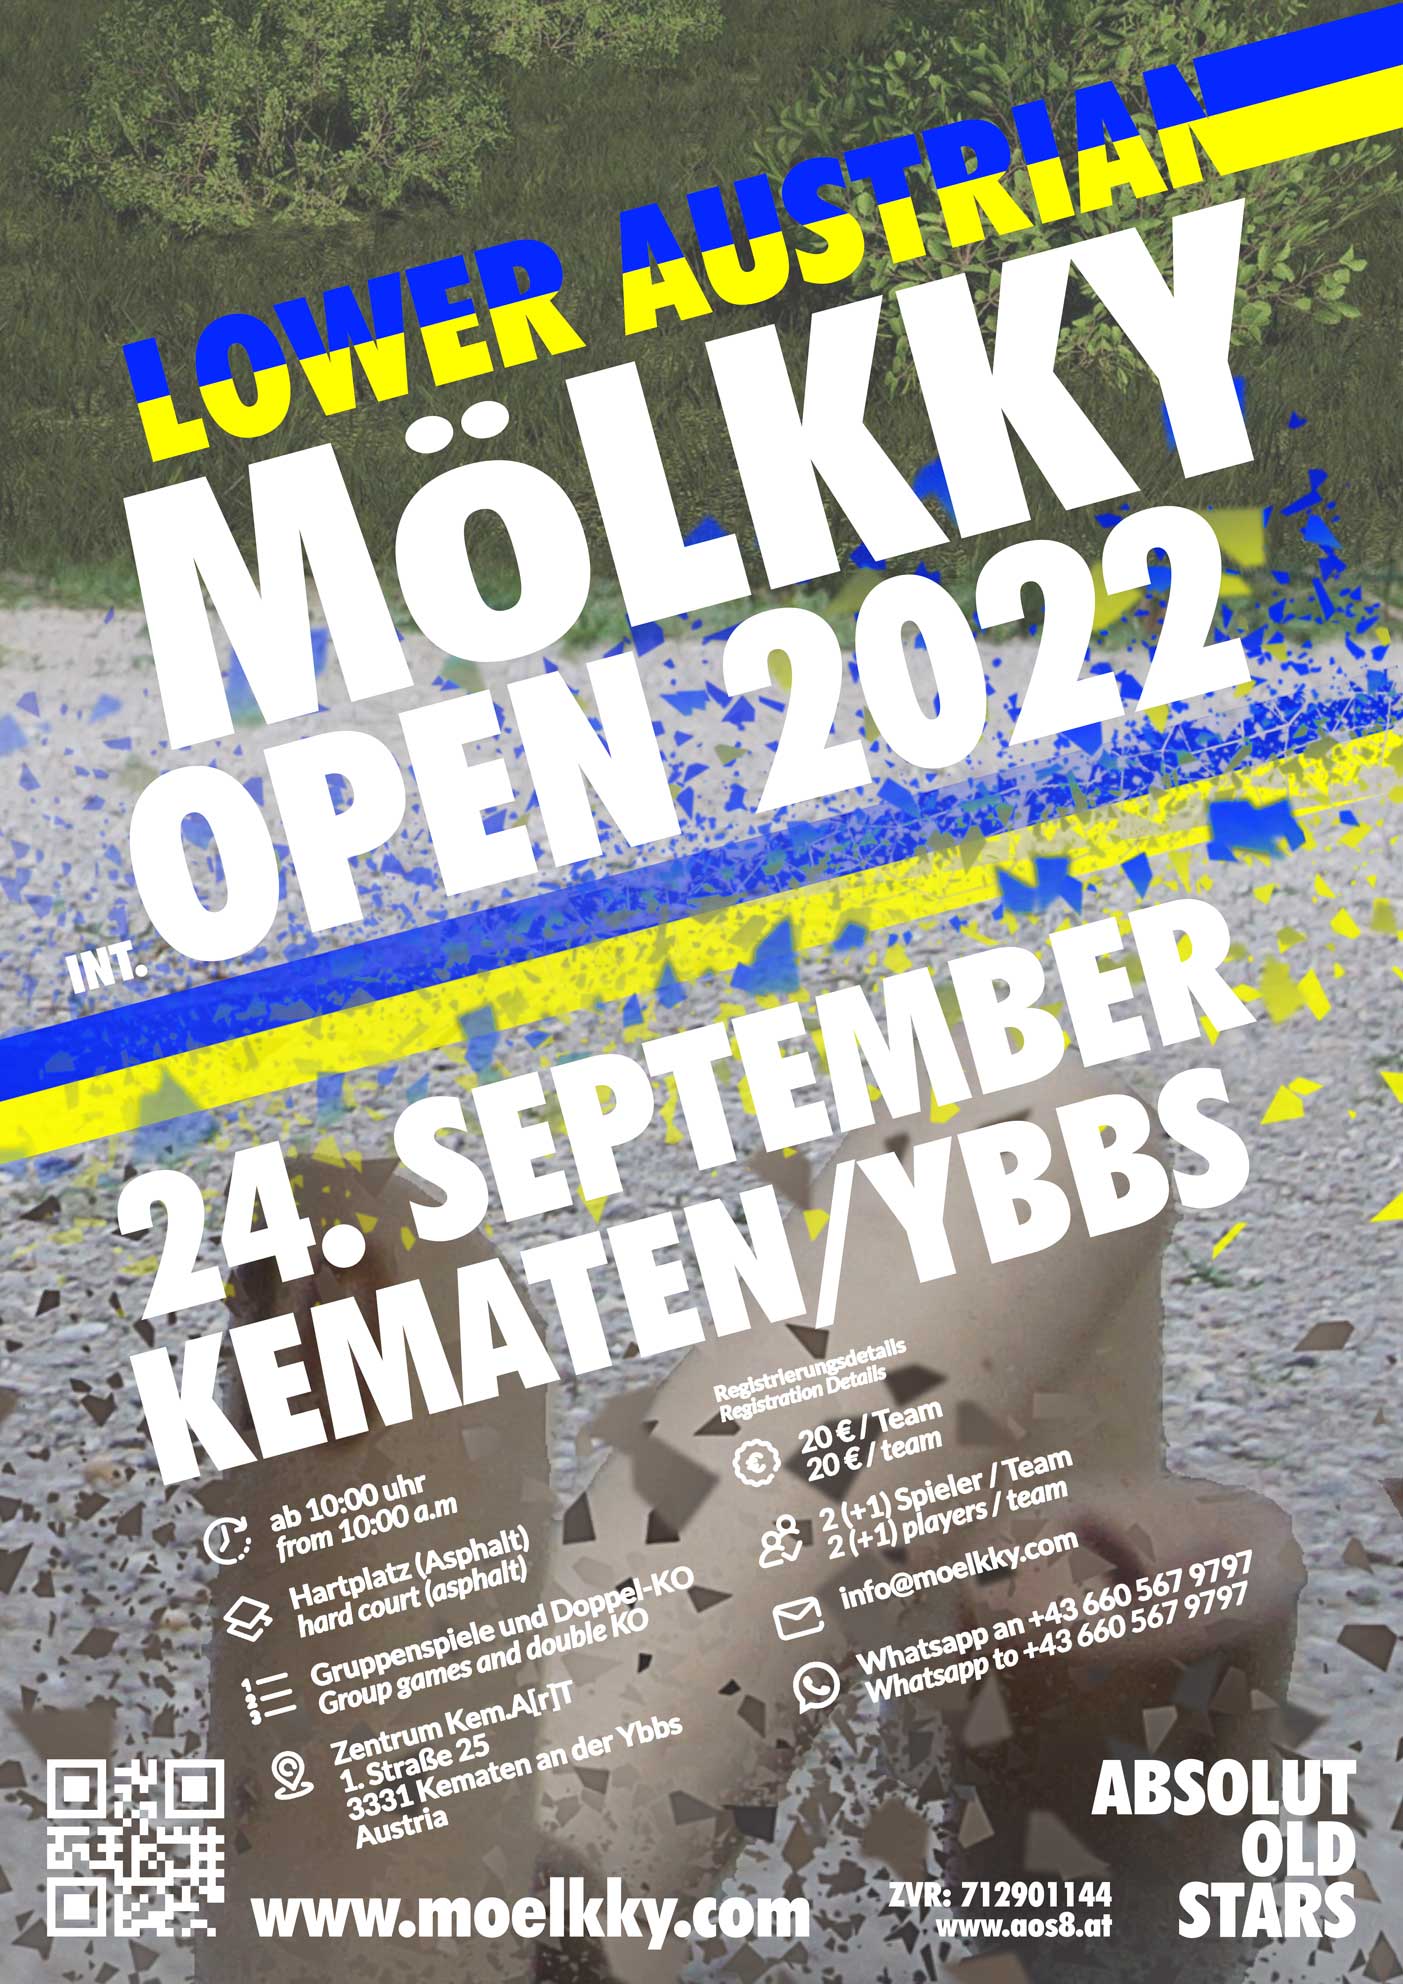 Lower Austrian Mölkky Open